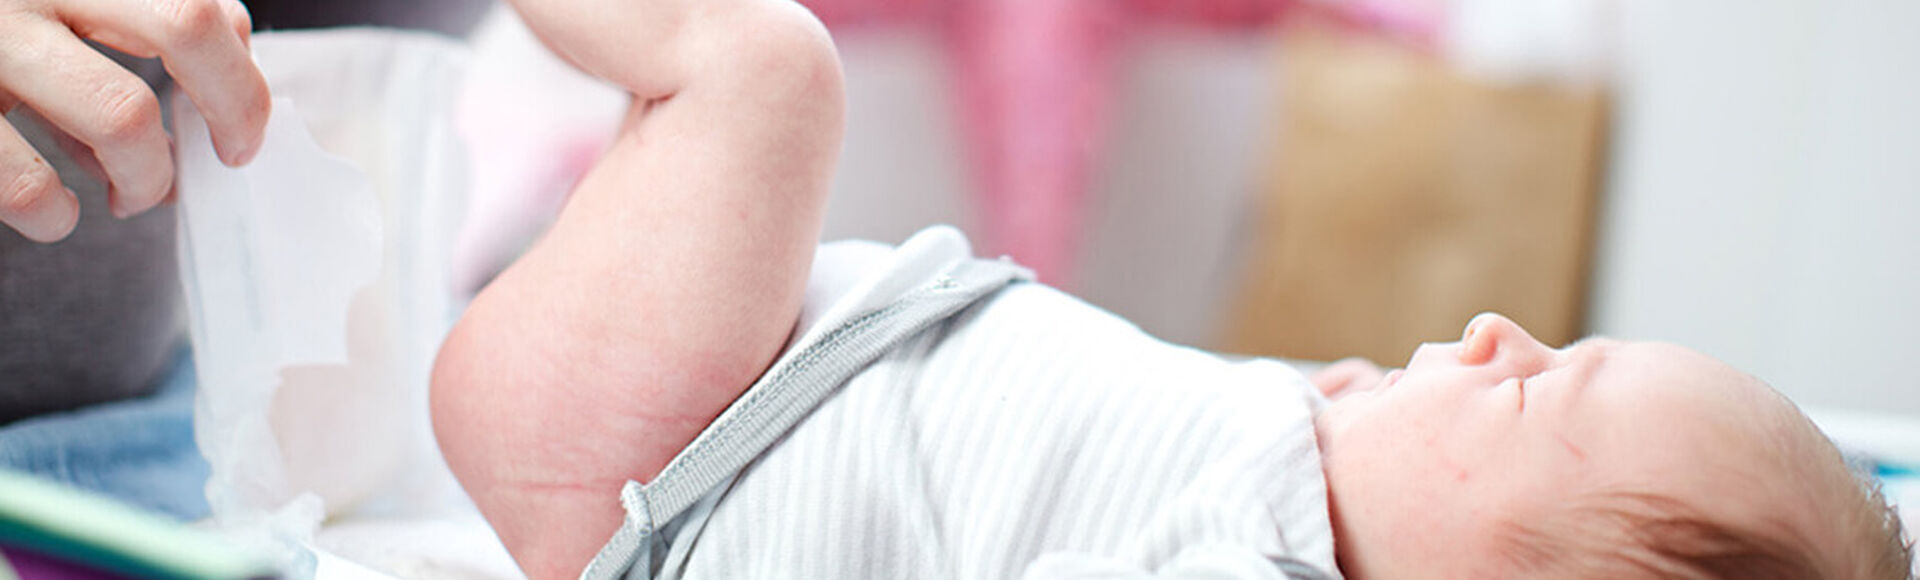 Paso a paso para cambair el pañal de tu bebé | Más Abrazos by Huggies